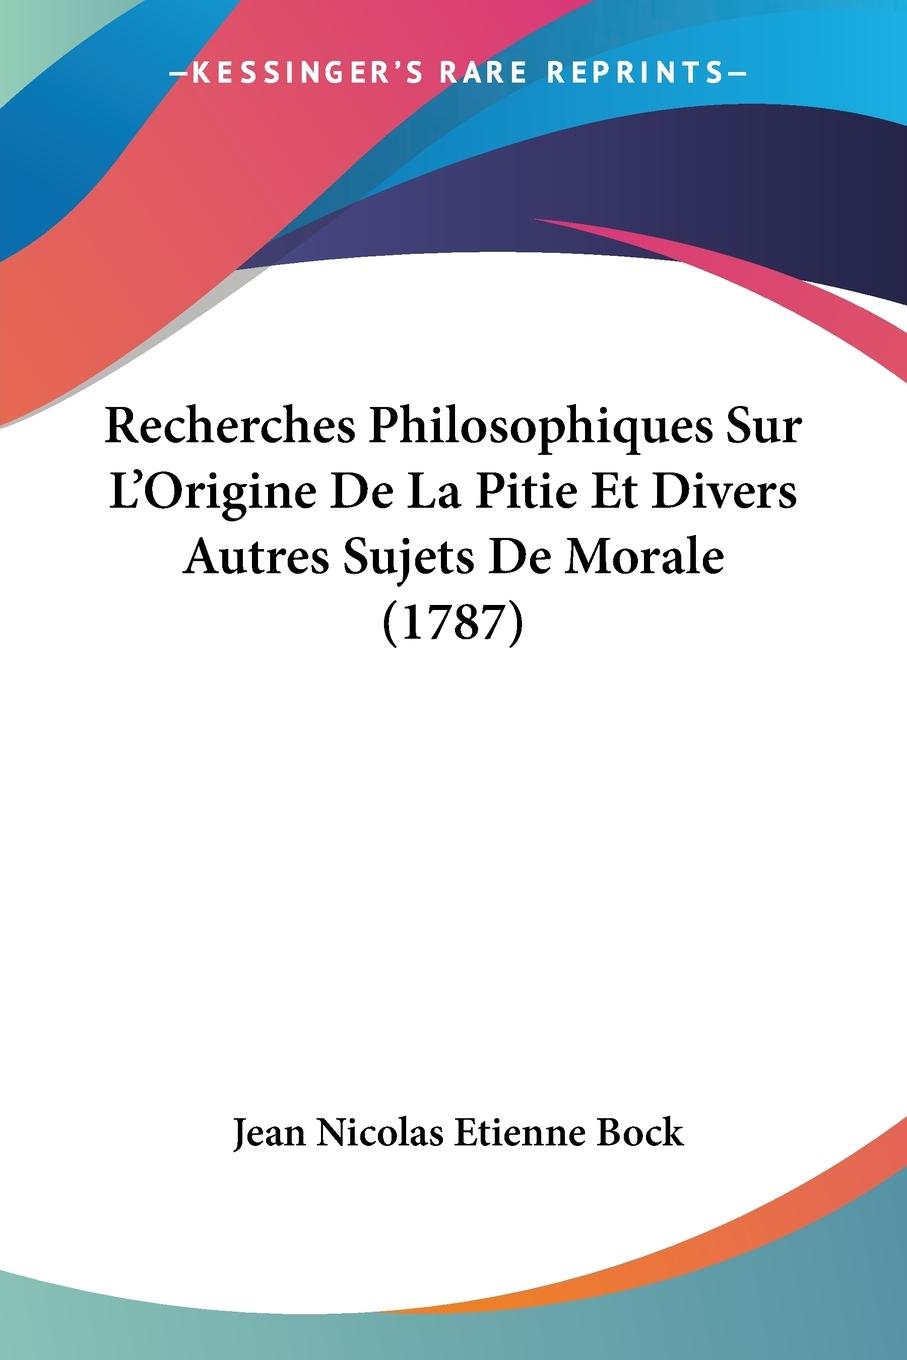 Recherches Philosophiques Sur L Origine De La Pitie Et Divers Autres Sujets De Morale (1787) - Bock, Jean Nicolas Etienne